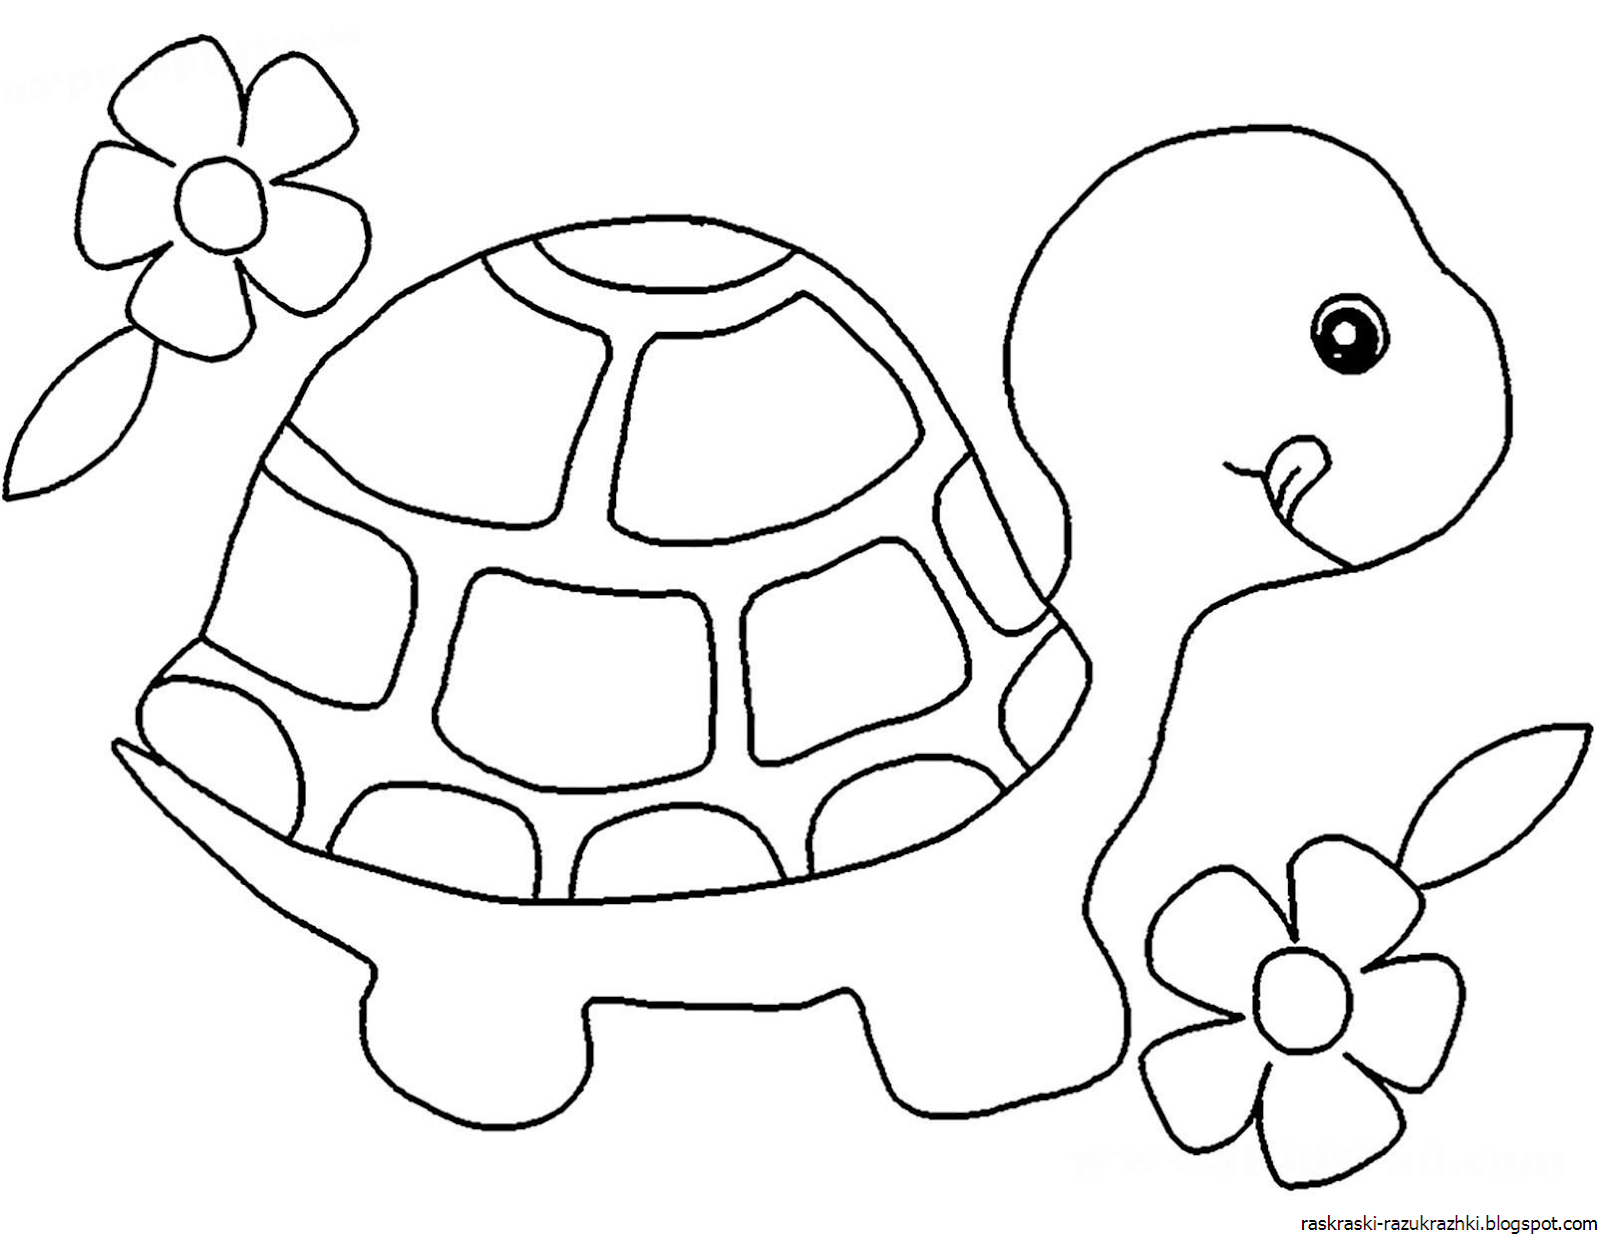 Трафареты для раскрашивания. Раскраска черепаха. Черепаха раскраска для детей. Черепашка раскраска для малышей. Трафареты для рисования пластилином.